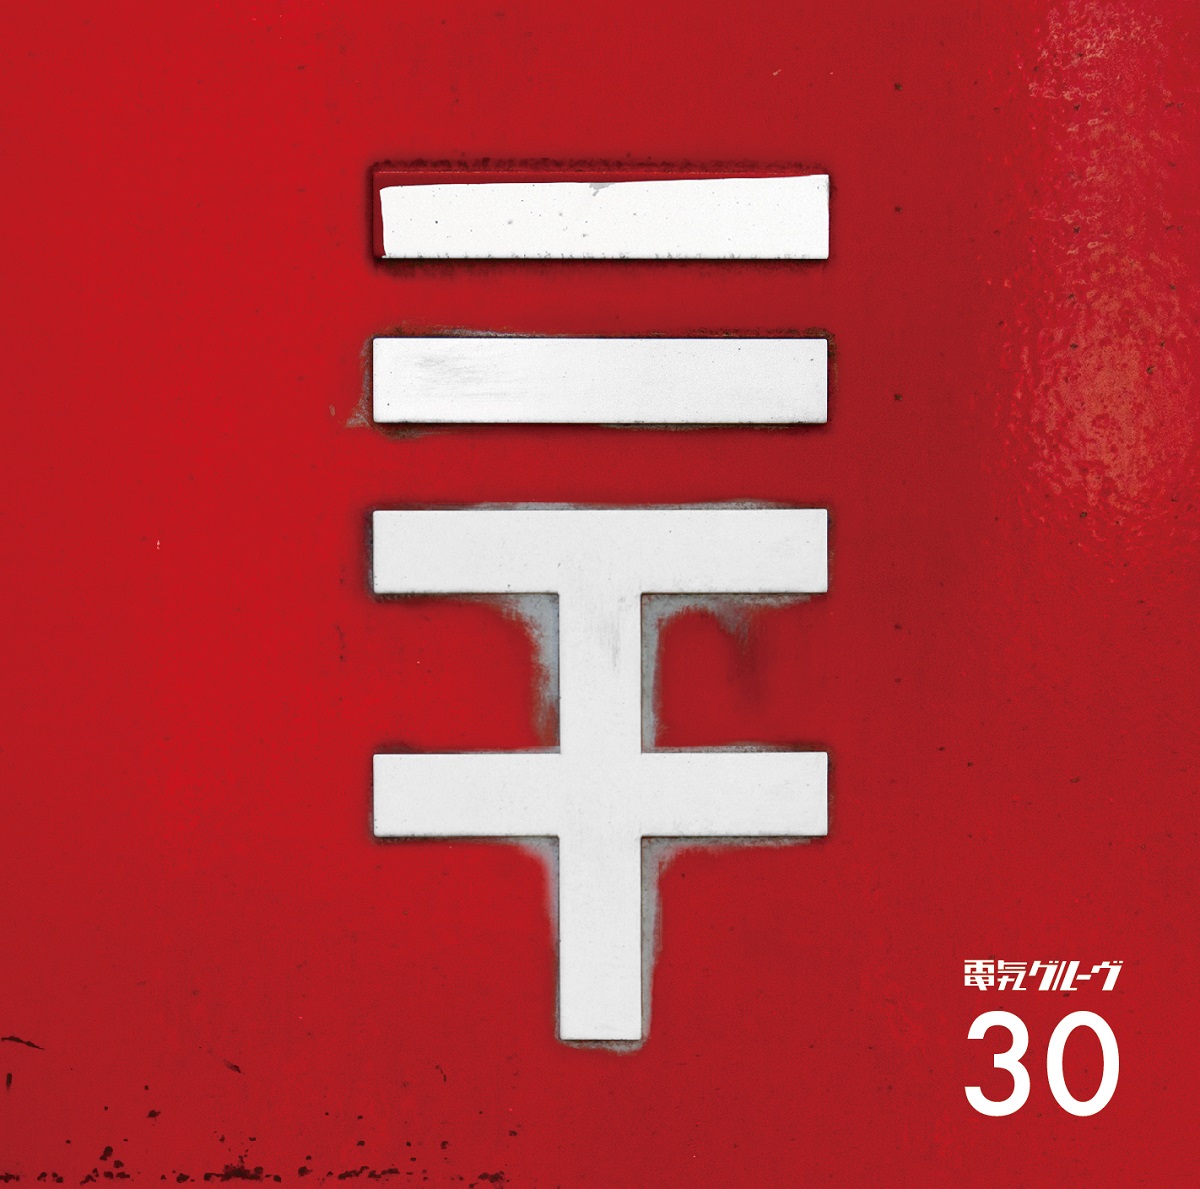 30【初回生産限定盤】 | 電気グルーヴ | ソニーミュージック 